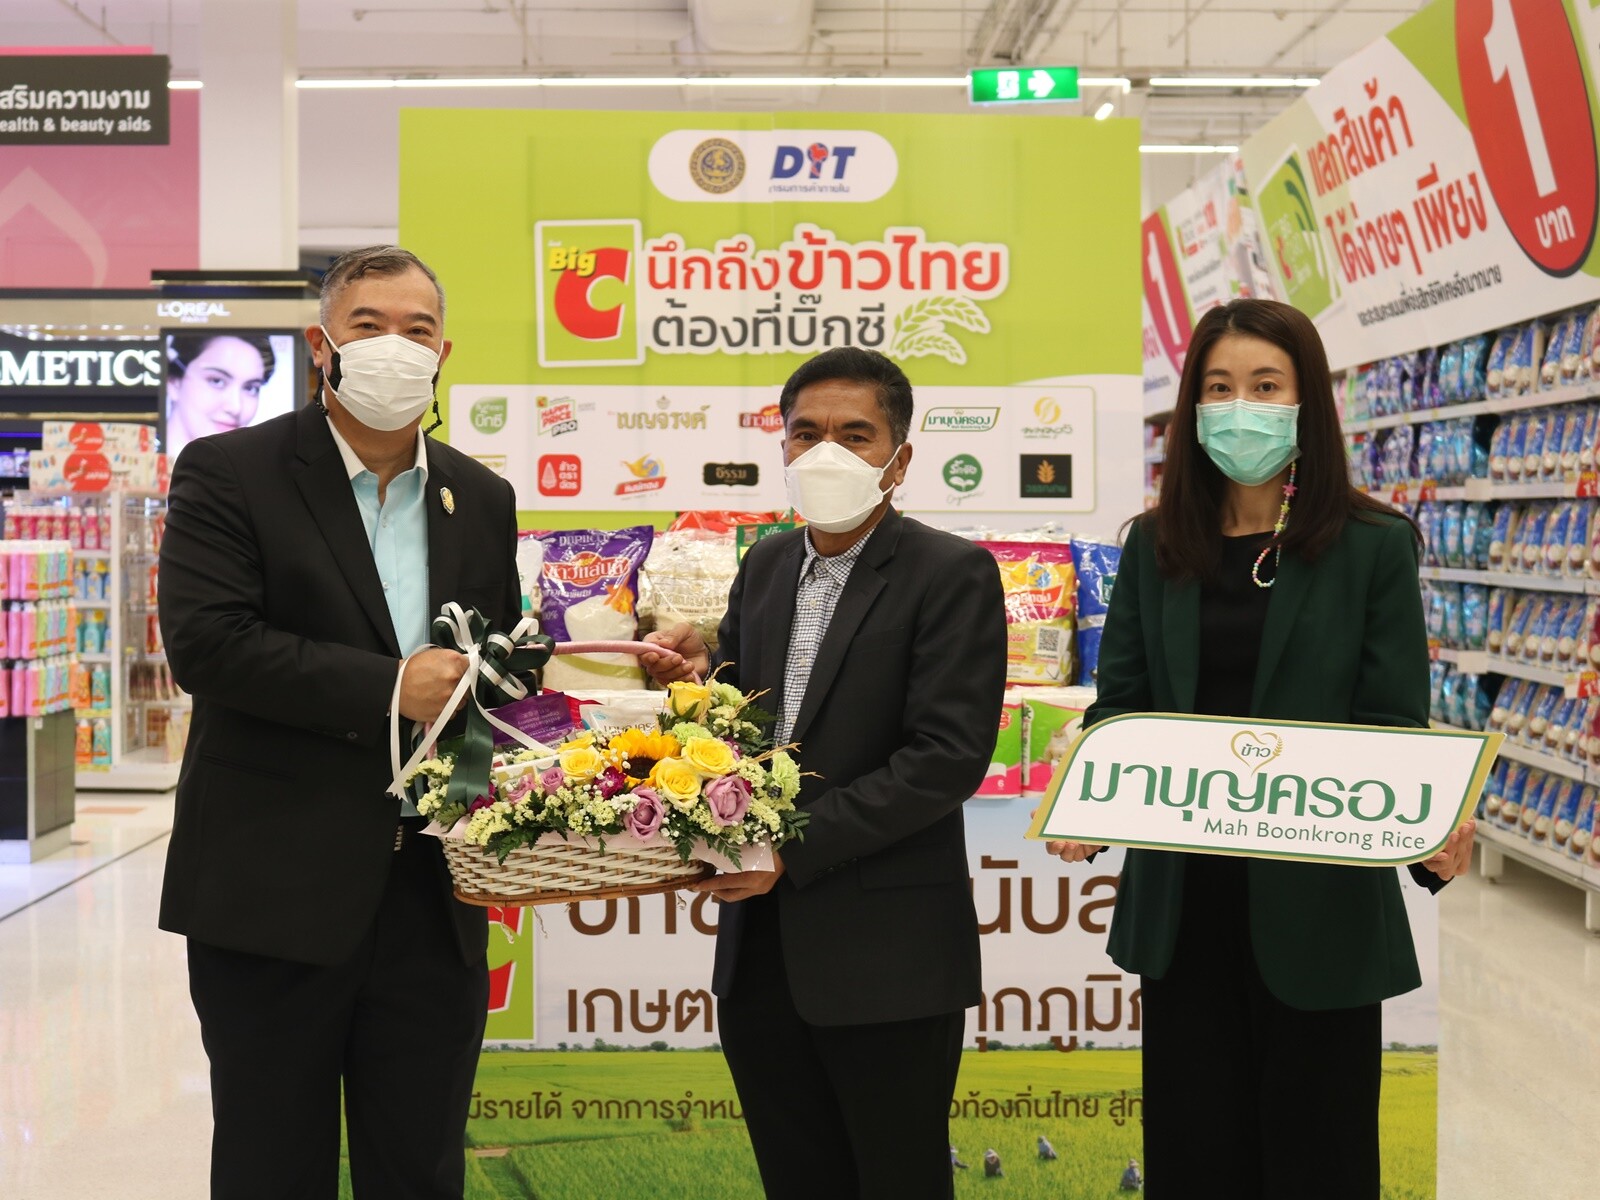 กลุ่มธุรกิจในเครือข้าวมาบุญครอง ร่วมงาน"ข้าวถุงร่วมใจ ประหยัดทั่วไทยที่บิ๊กซี" ครั้งที่ 13 ล็อกราคาข้าวคุณภาพ ช่วยเหลือผู้บริโภค